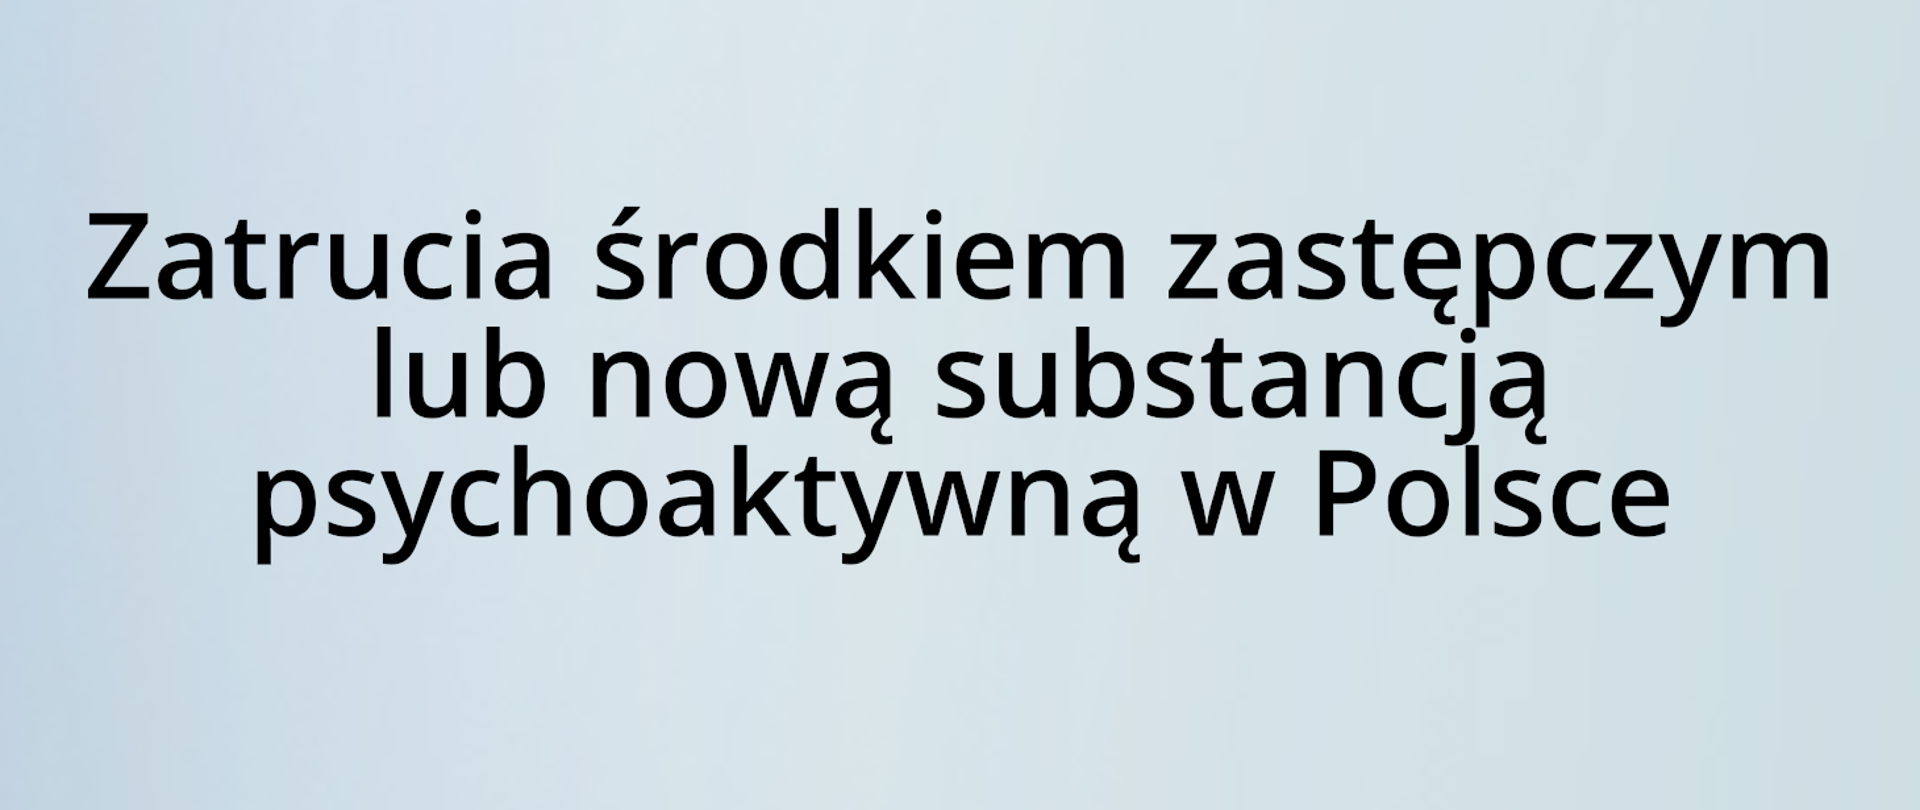 Zatrucia środkiem zastępczym lub nową substancją psychoaktywną w Polsce